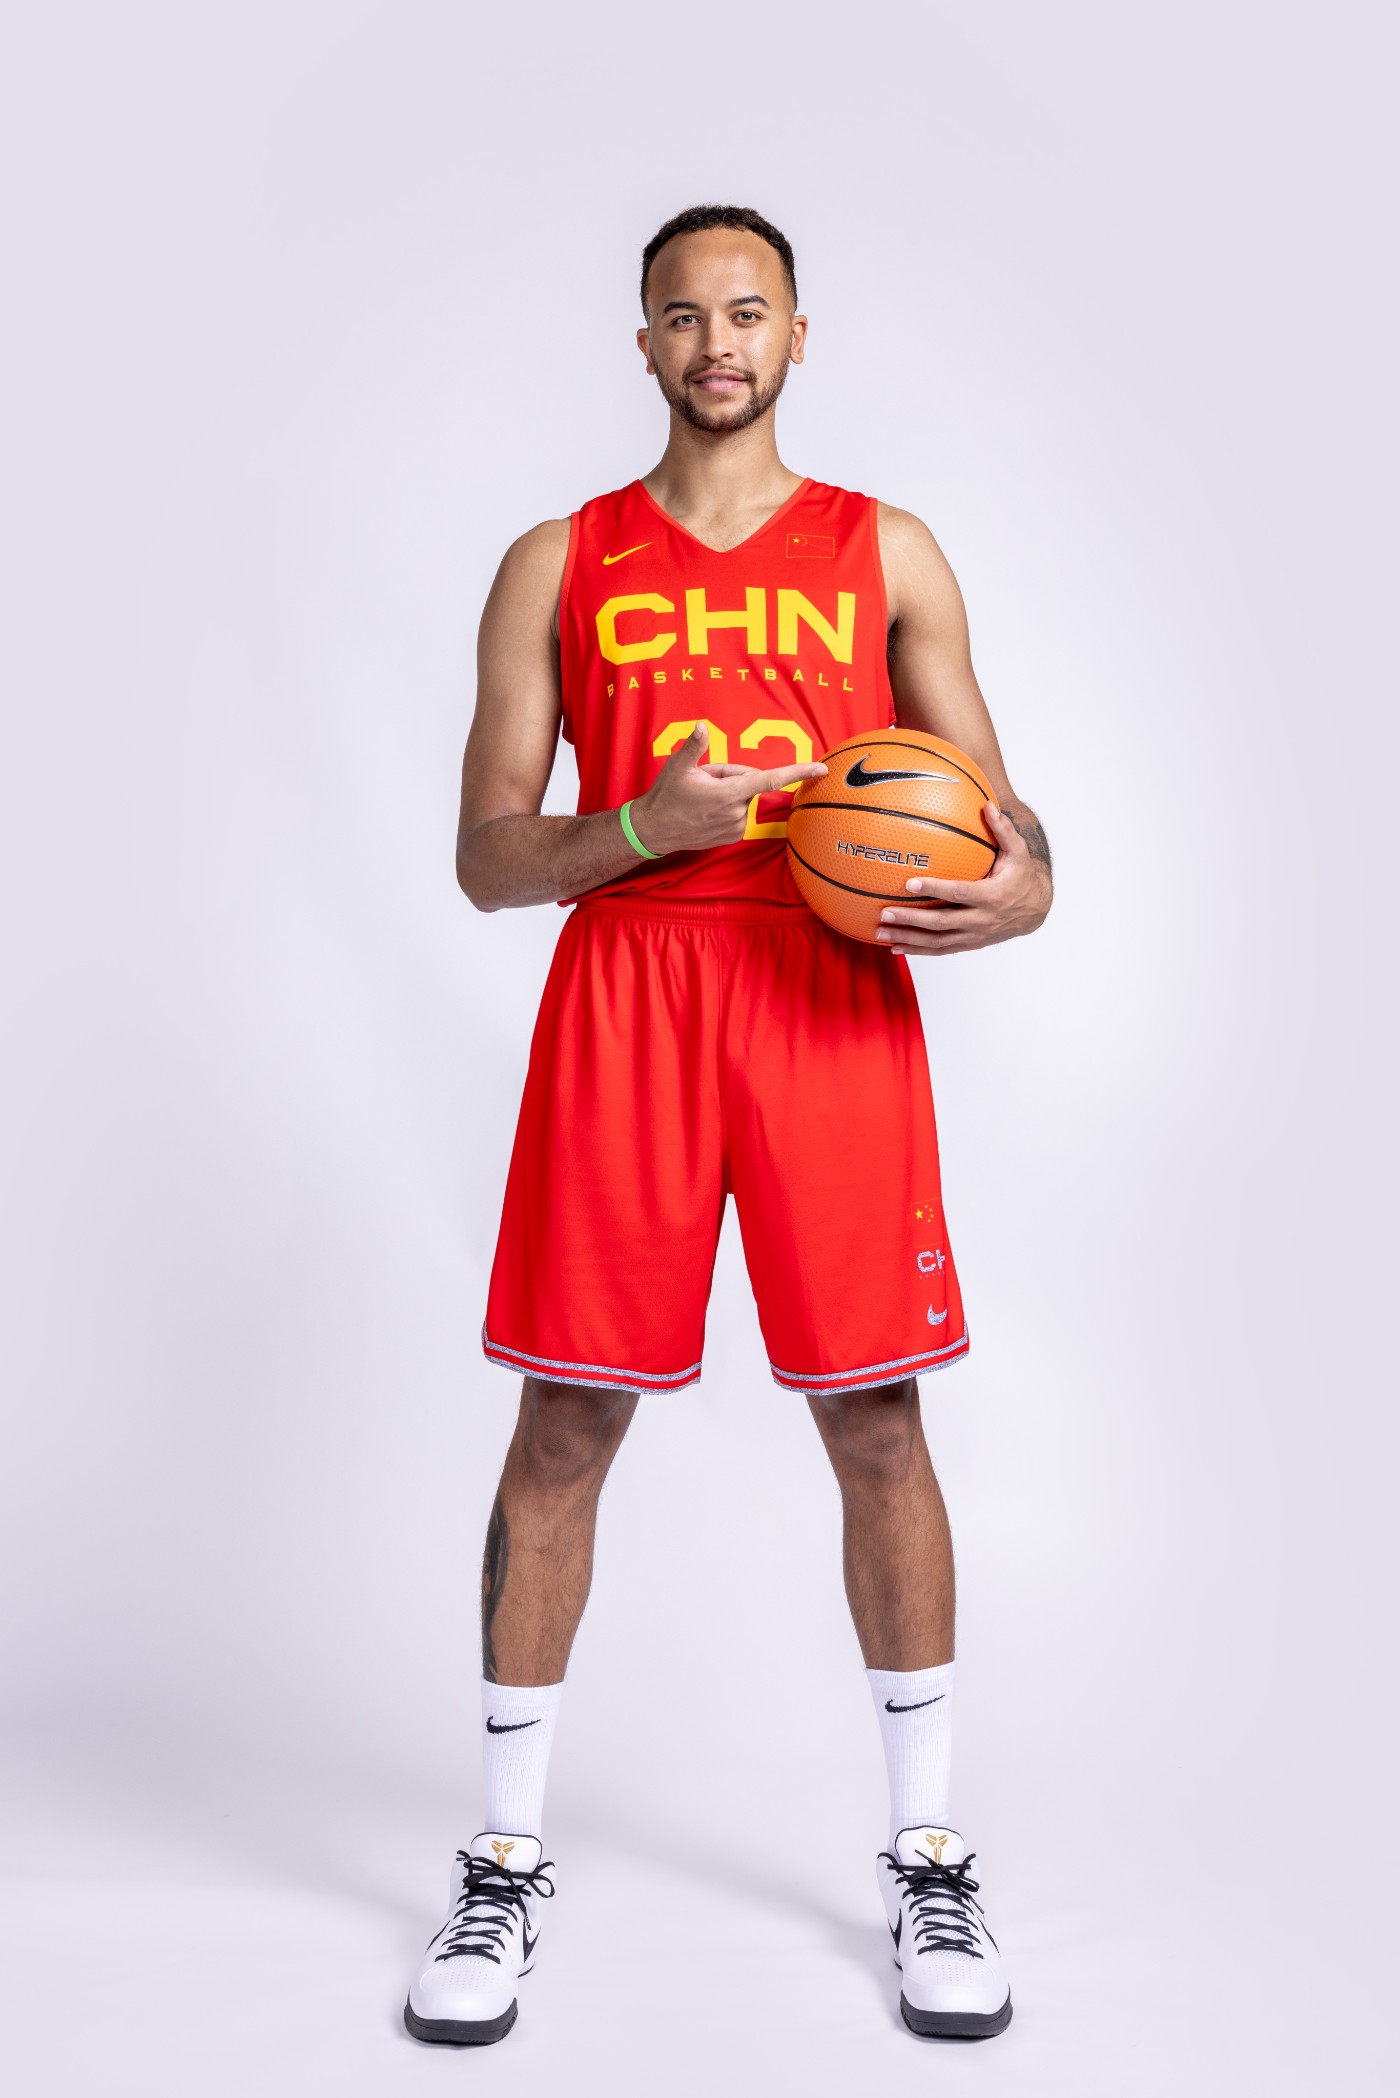 Nike,李凯尔,中国国家队  李凯尔签约 Nike！脚上穿的球鞋居然是...